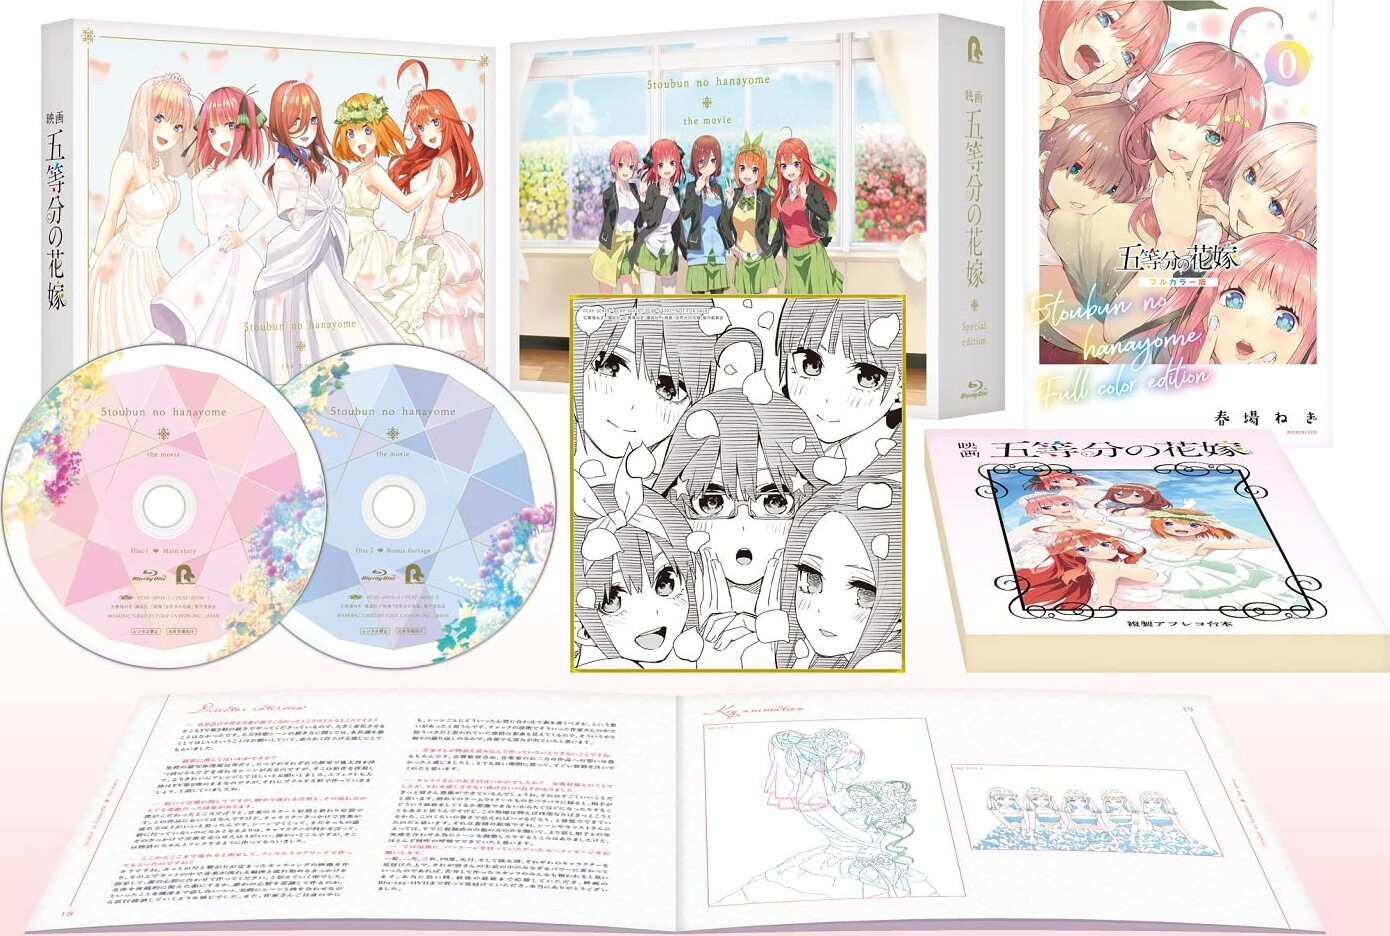 Volume 2 (Blu-ray & DVD), 5Toubun no Hanayome Wiki